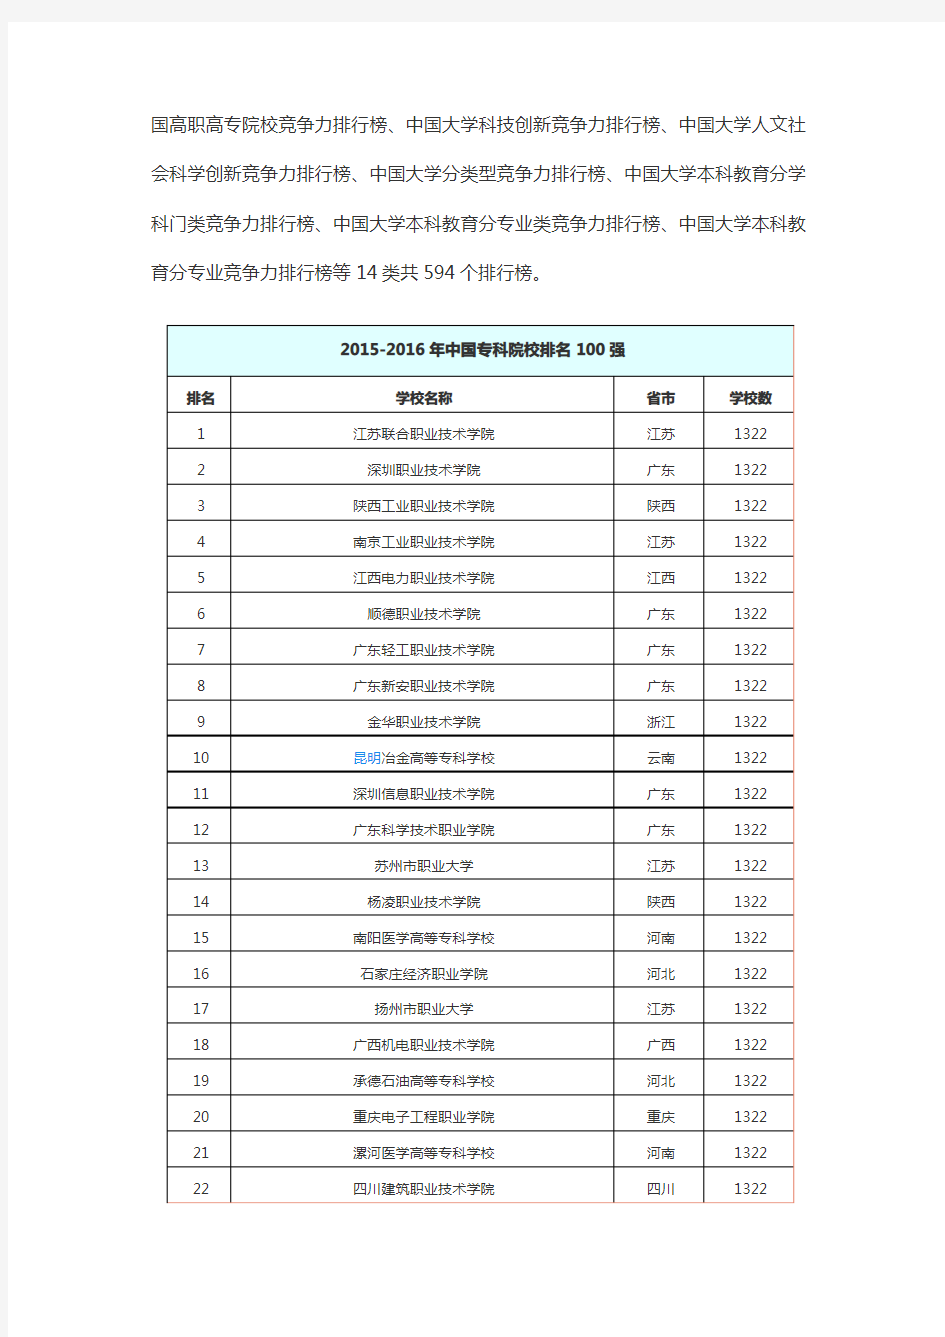 2015-2016年中国专科院校排名100强